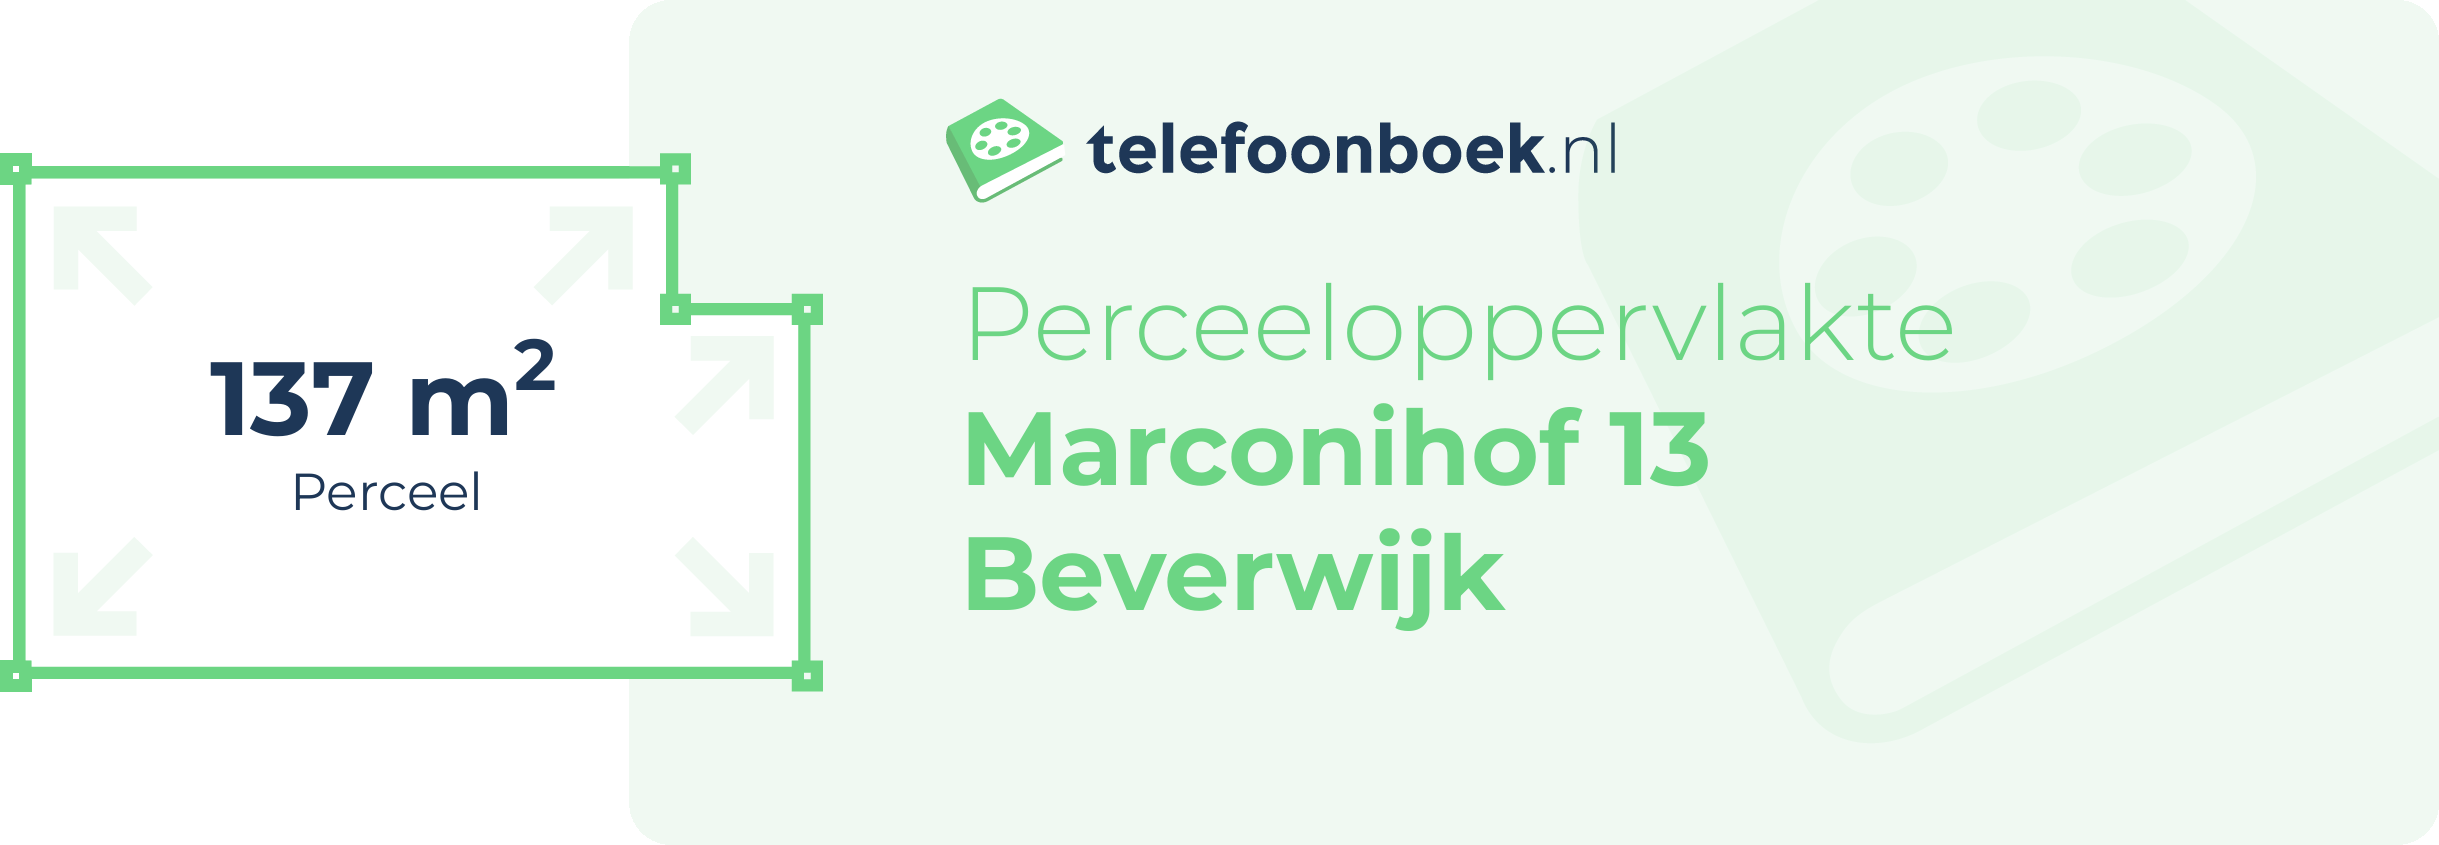 Perceeloppervlakte Marconihof 13 Beverwijk